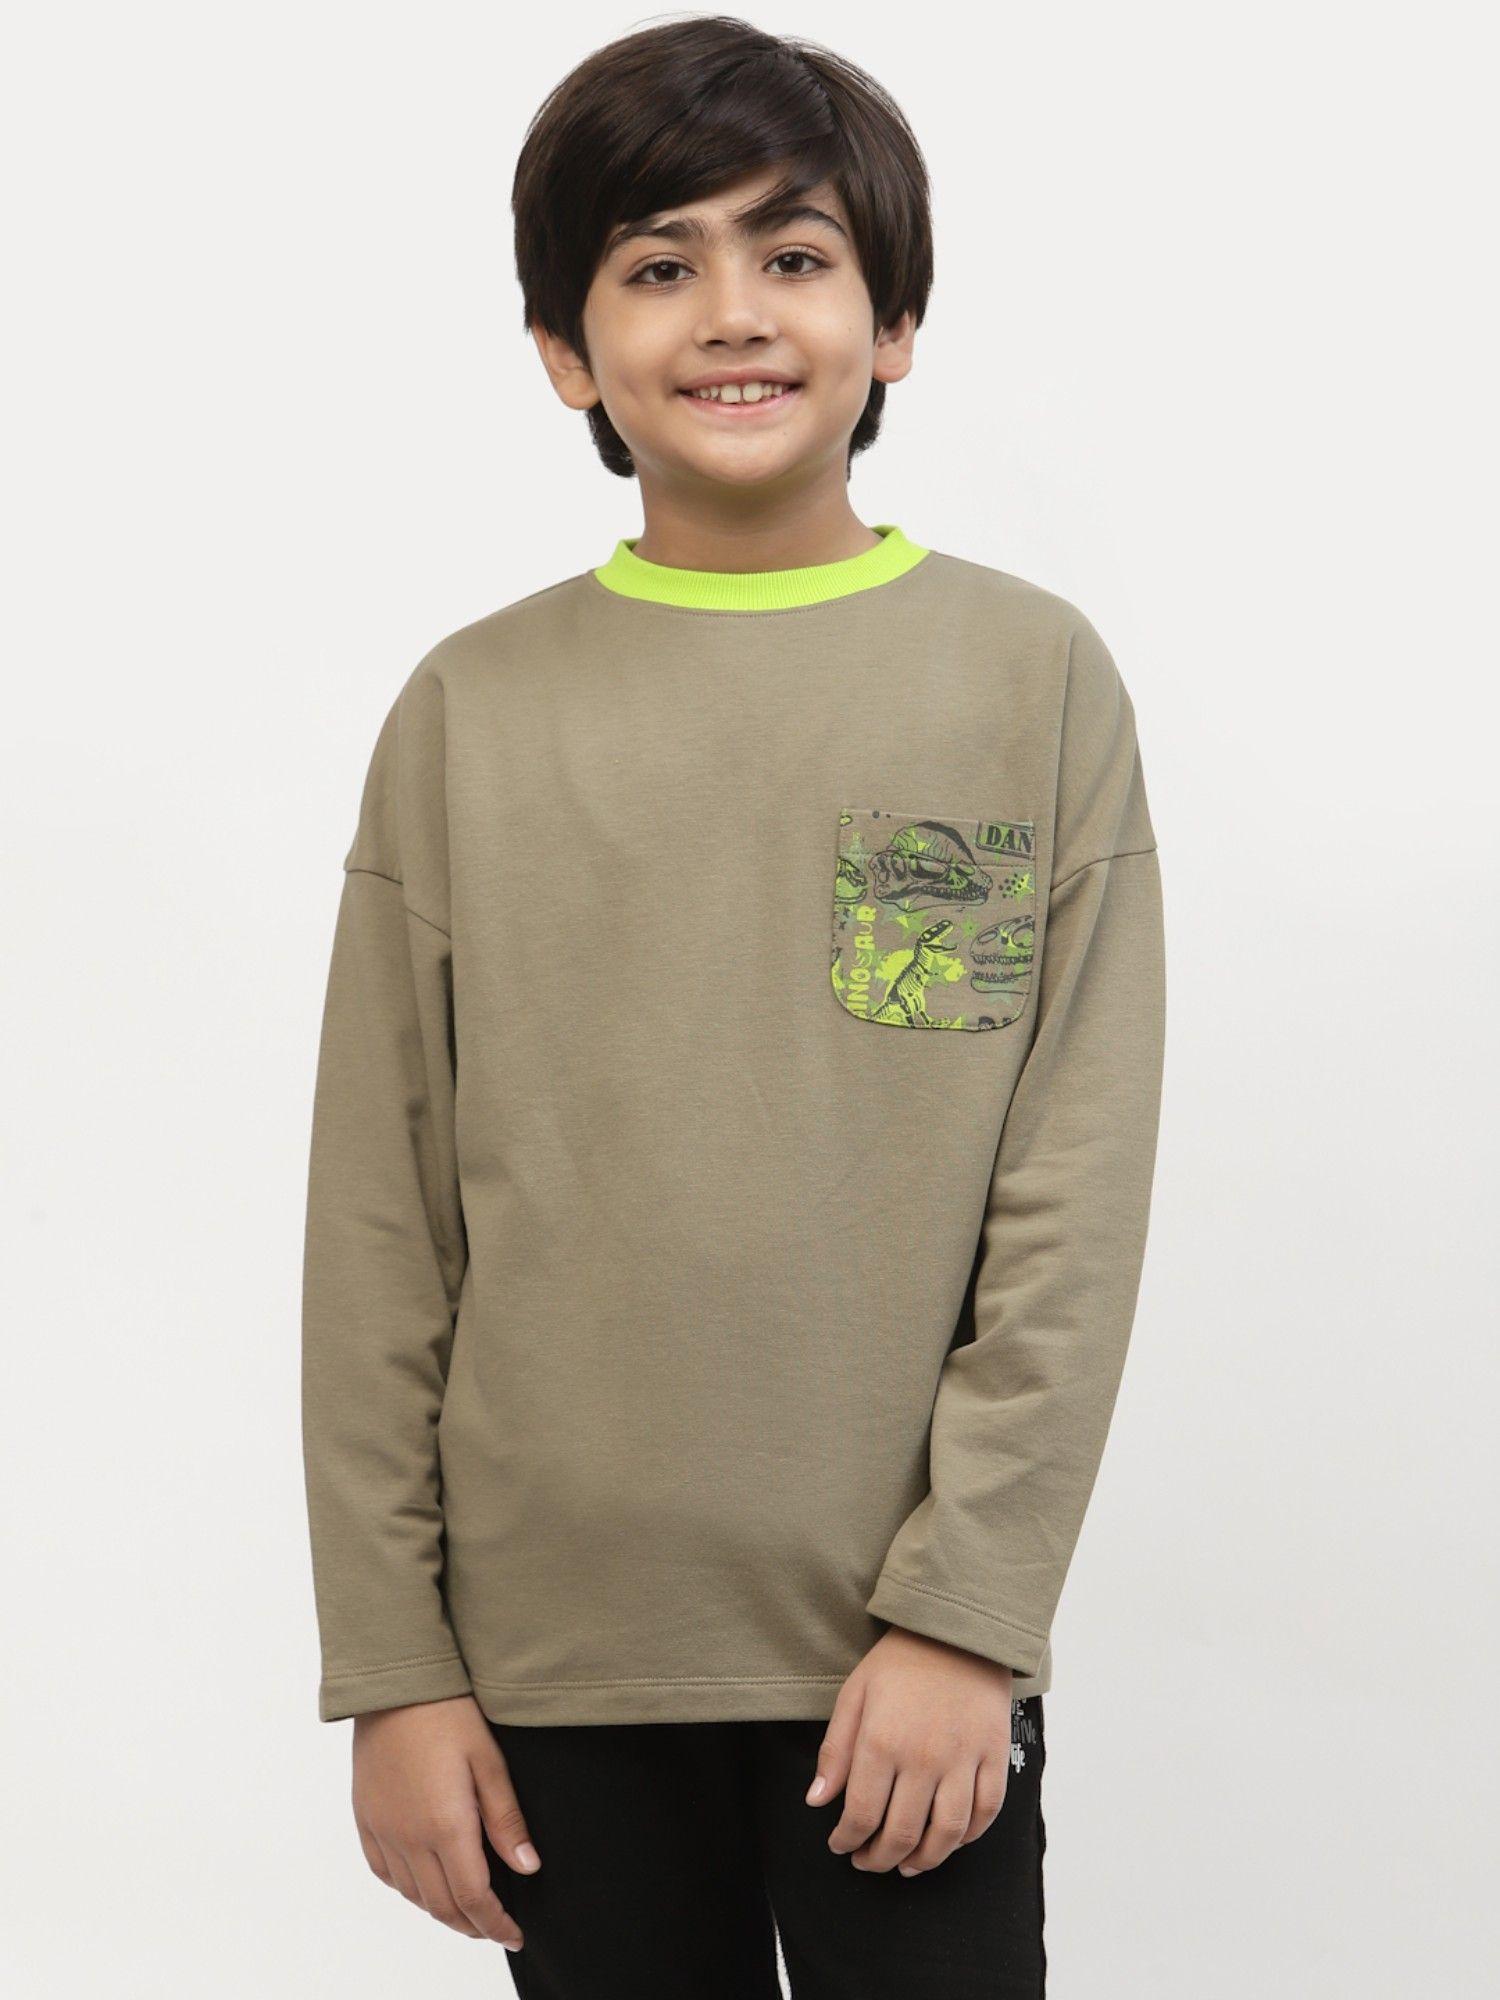 boys-winter-pocket-printed-tshirt-green